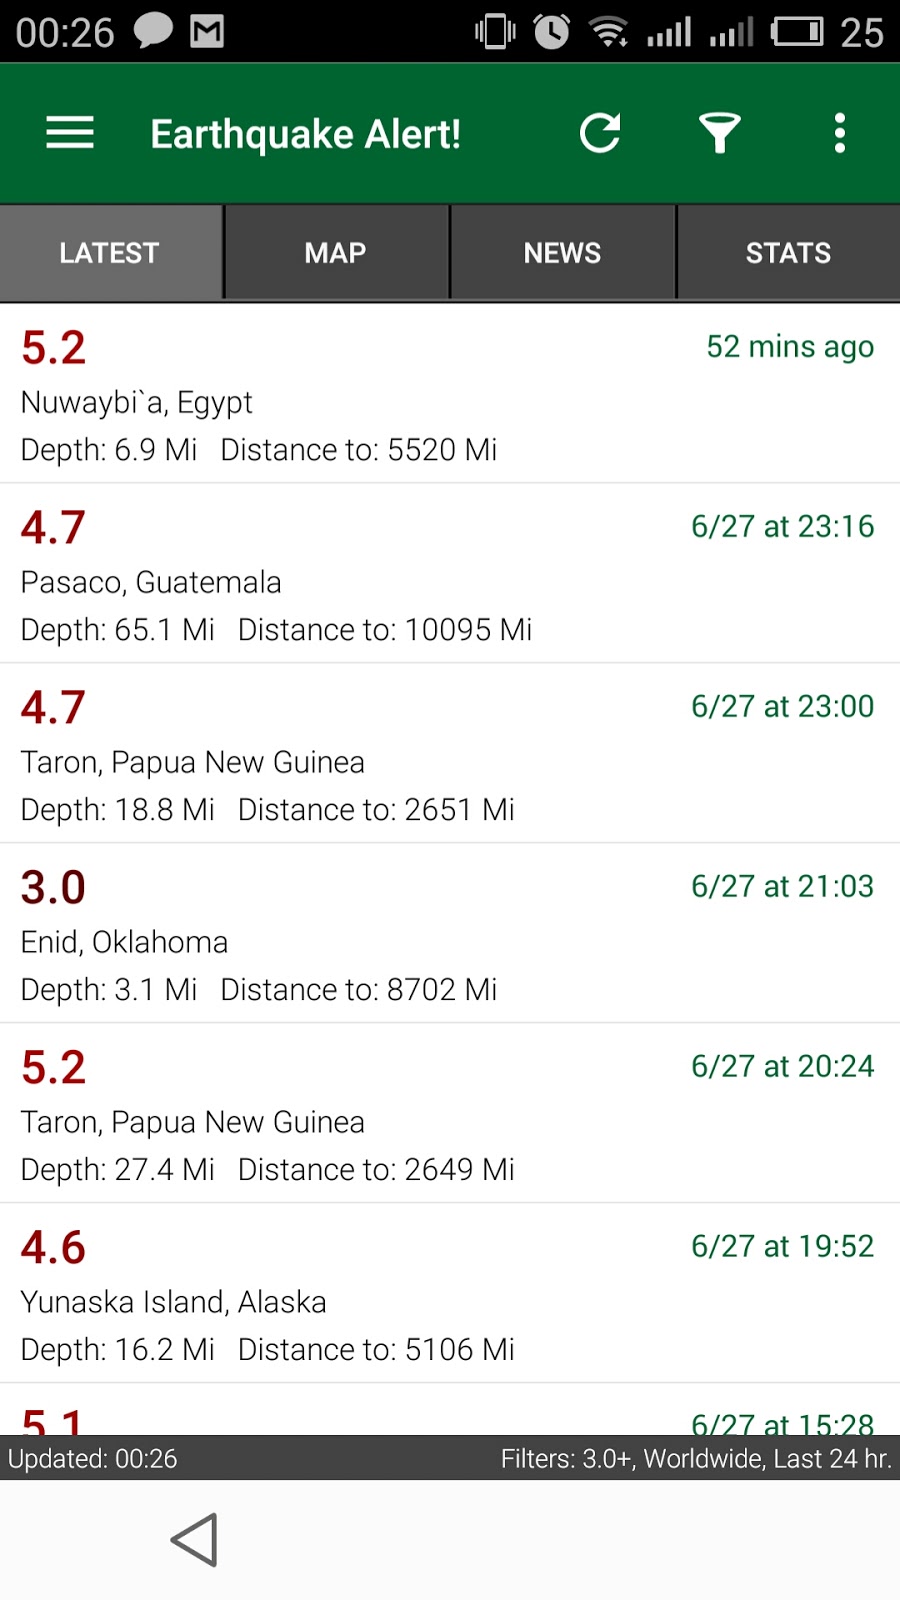 Earthquake In Nuwaybi'a Egypt 5.2 SR 28 June 2015